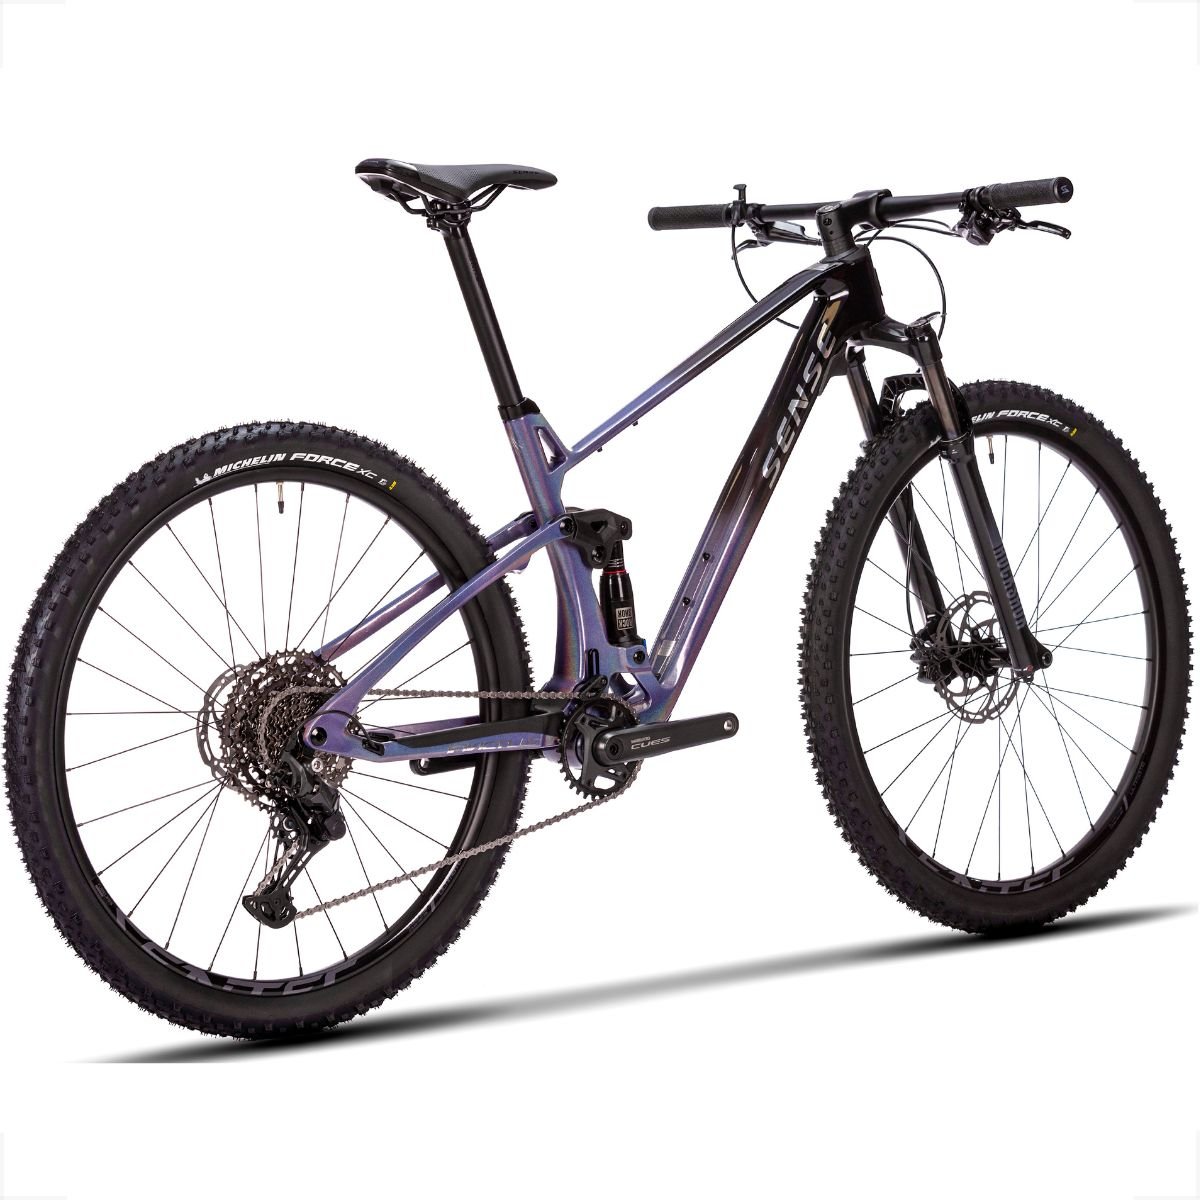 Bicicleta Full Sense Invictus Sport Carbono Shimano Cues:roxo+preto/15 - 3